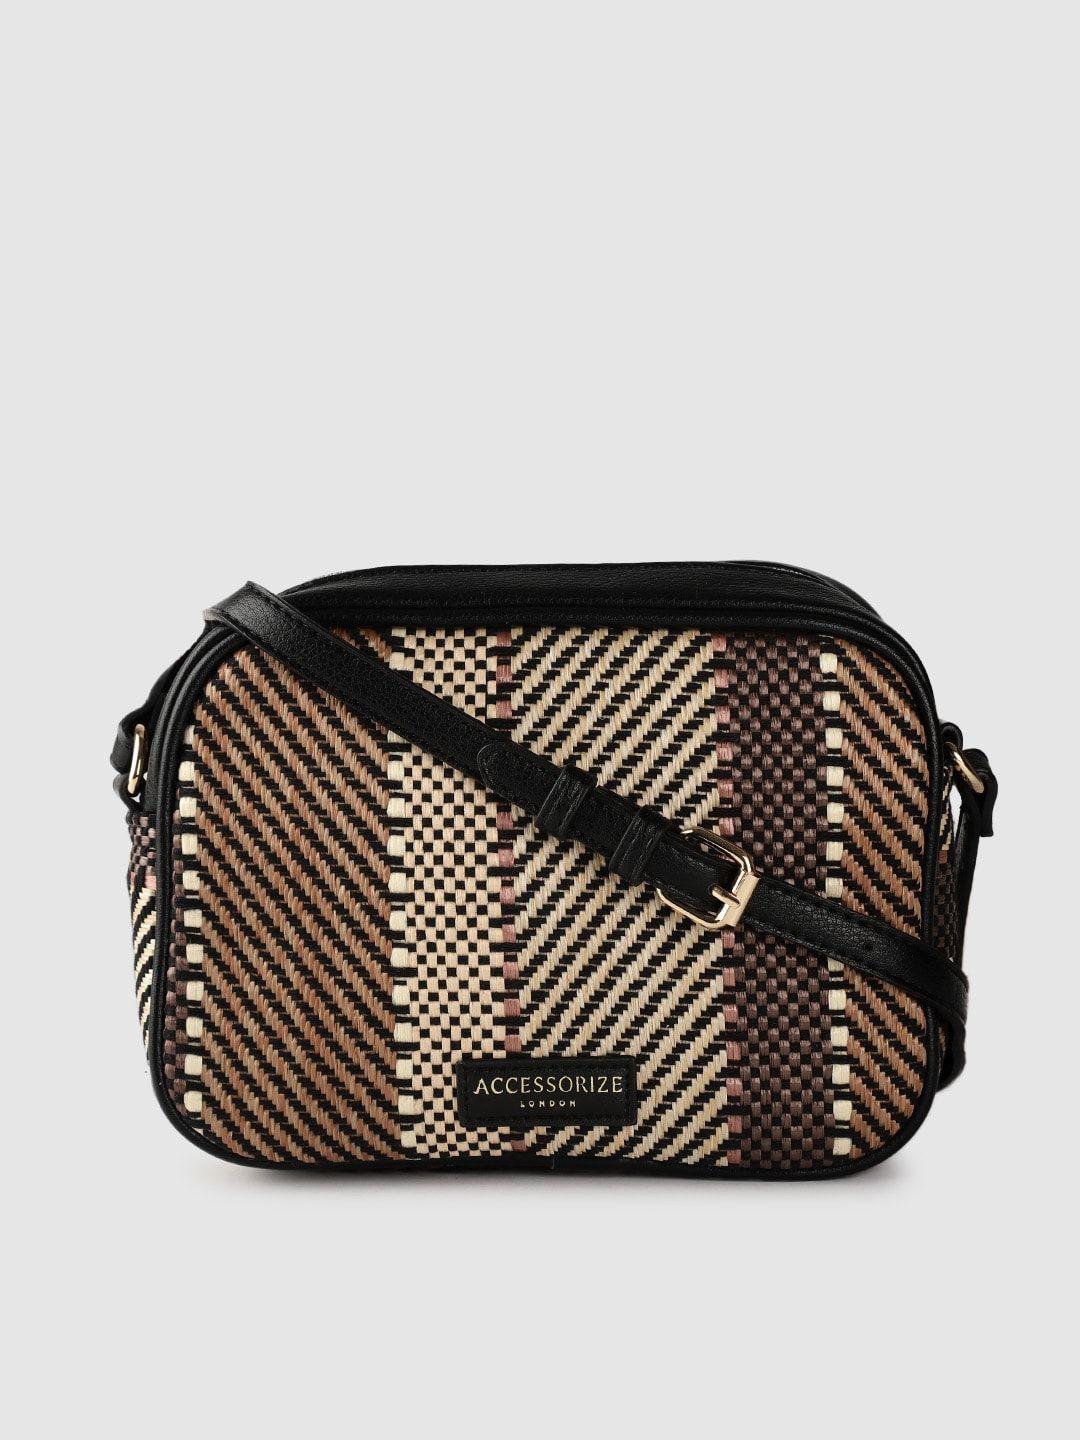 accessorize london women's faux leather aztec textile camera bag